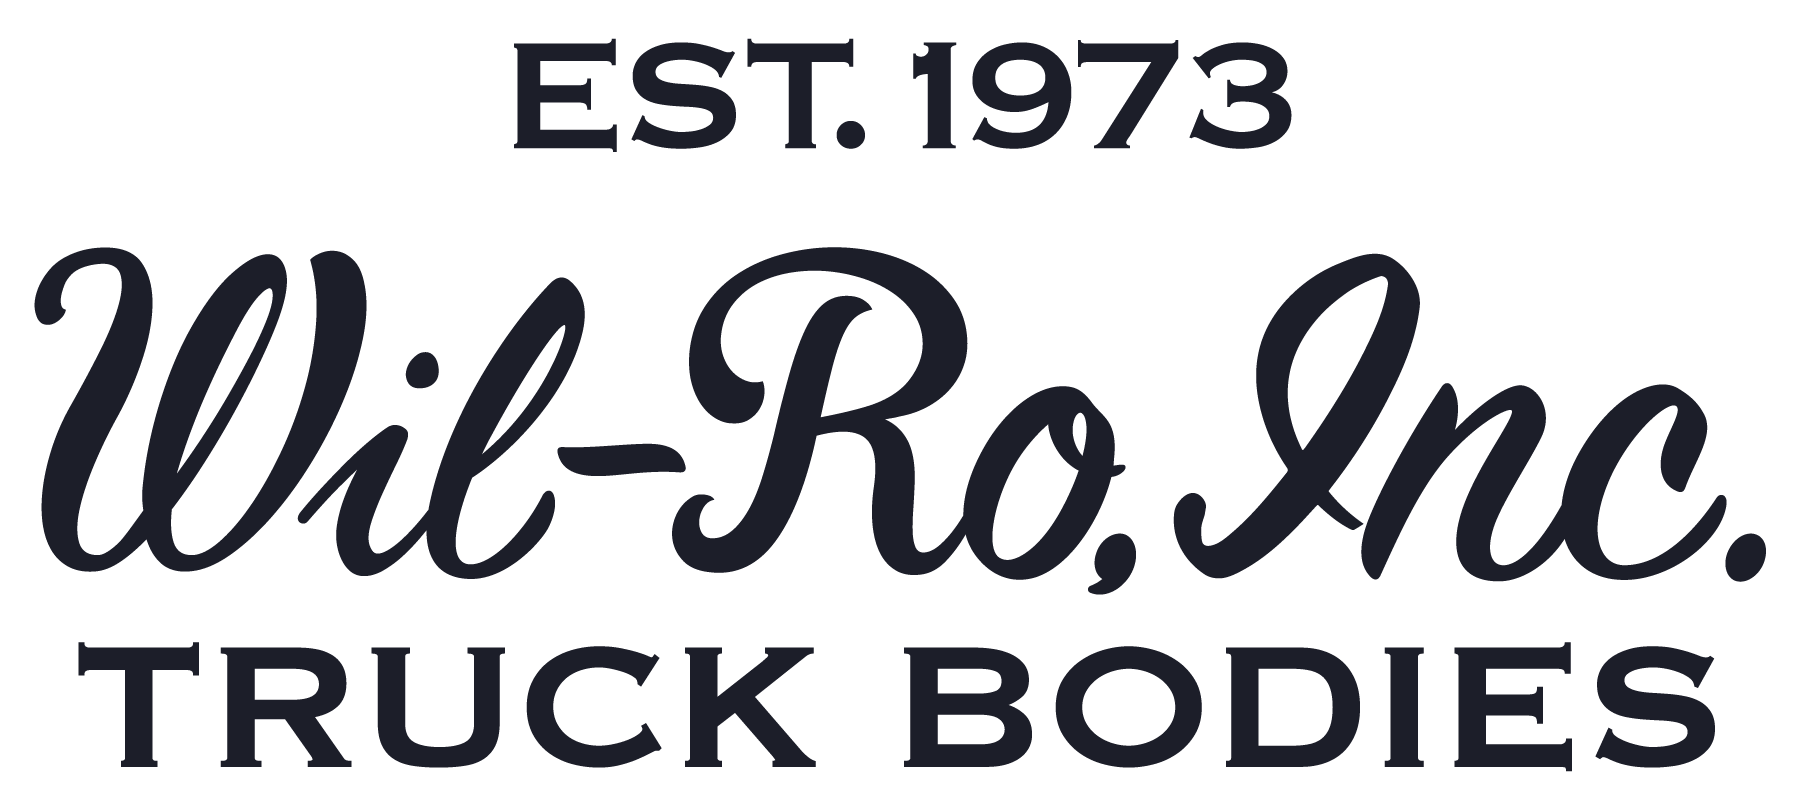 Wil-Ro, Inc. logo